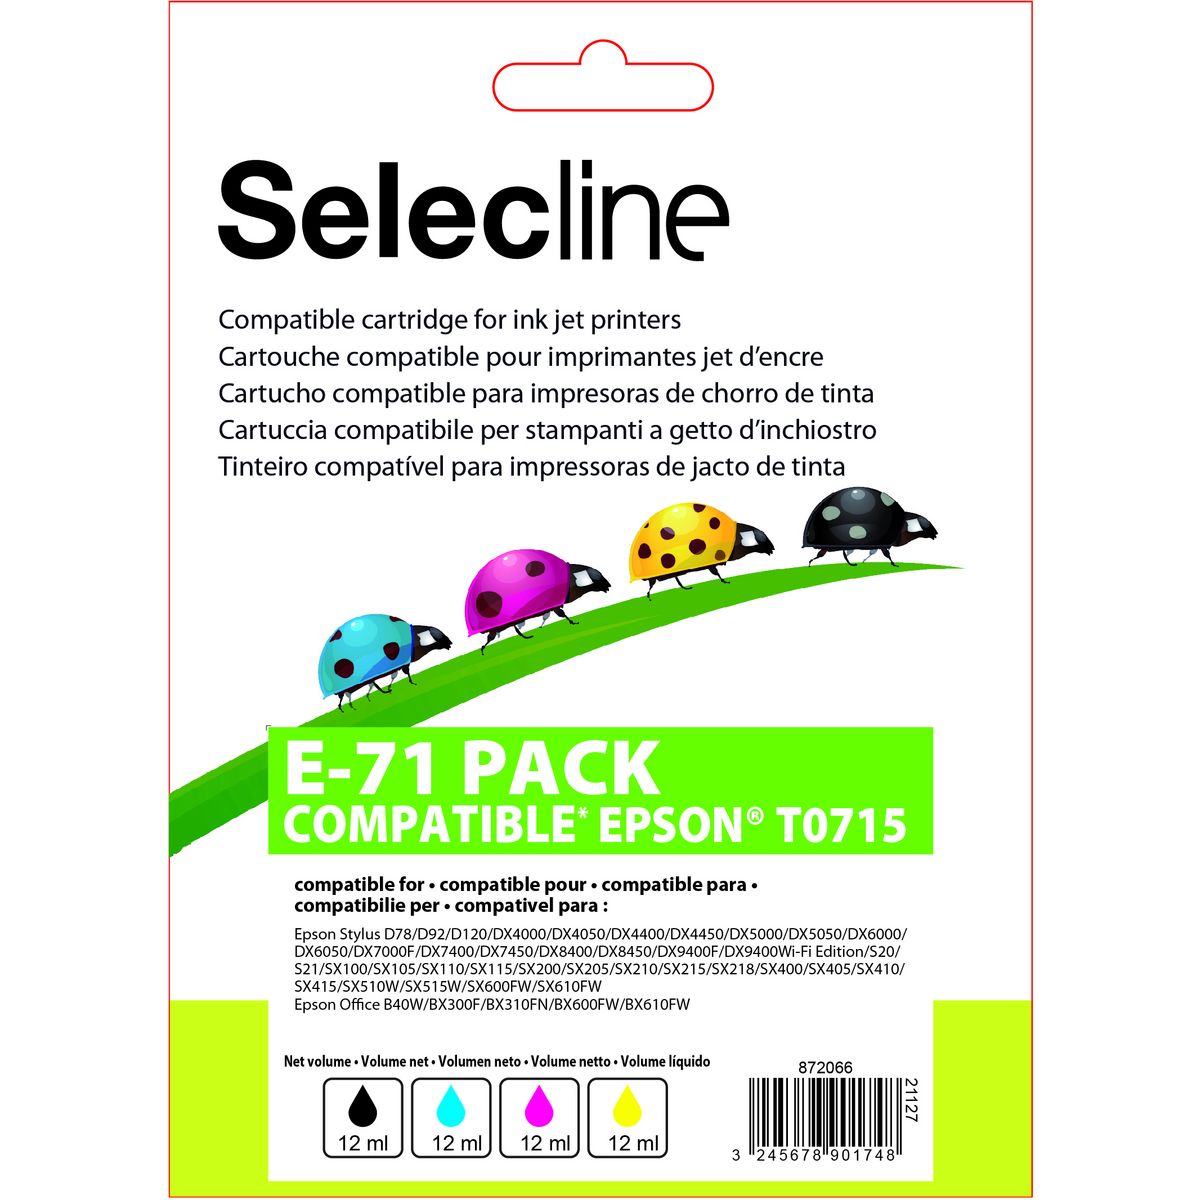 SELECLINE Cartouche 4 Couleurs E-71 PACK